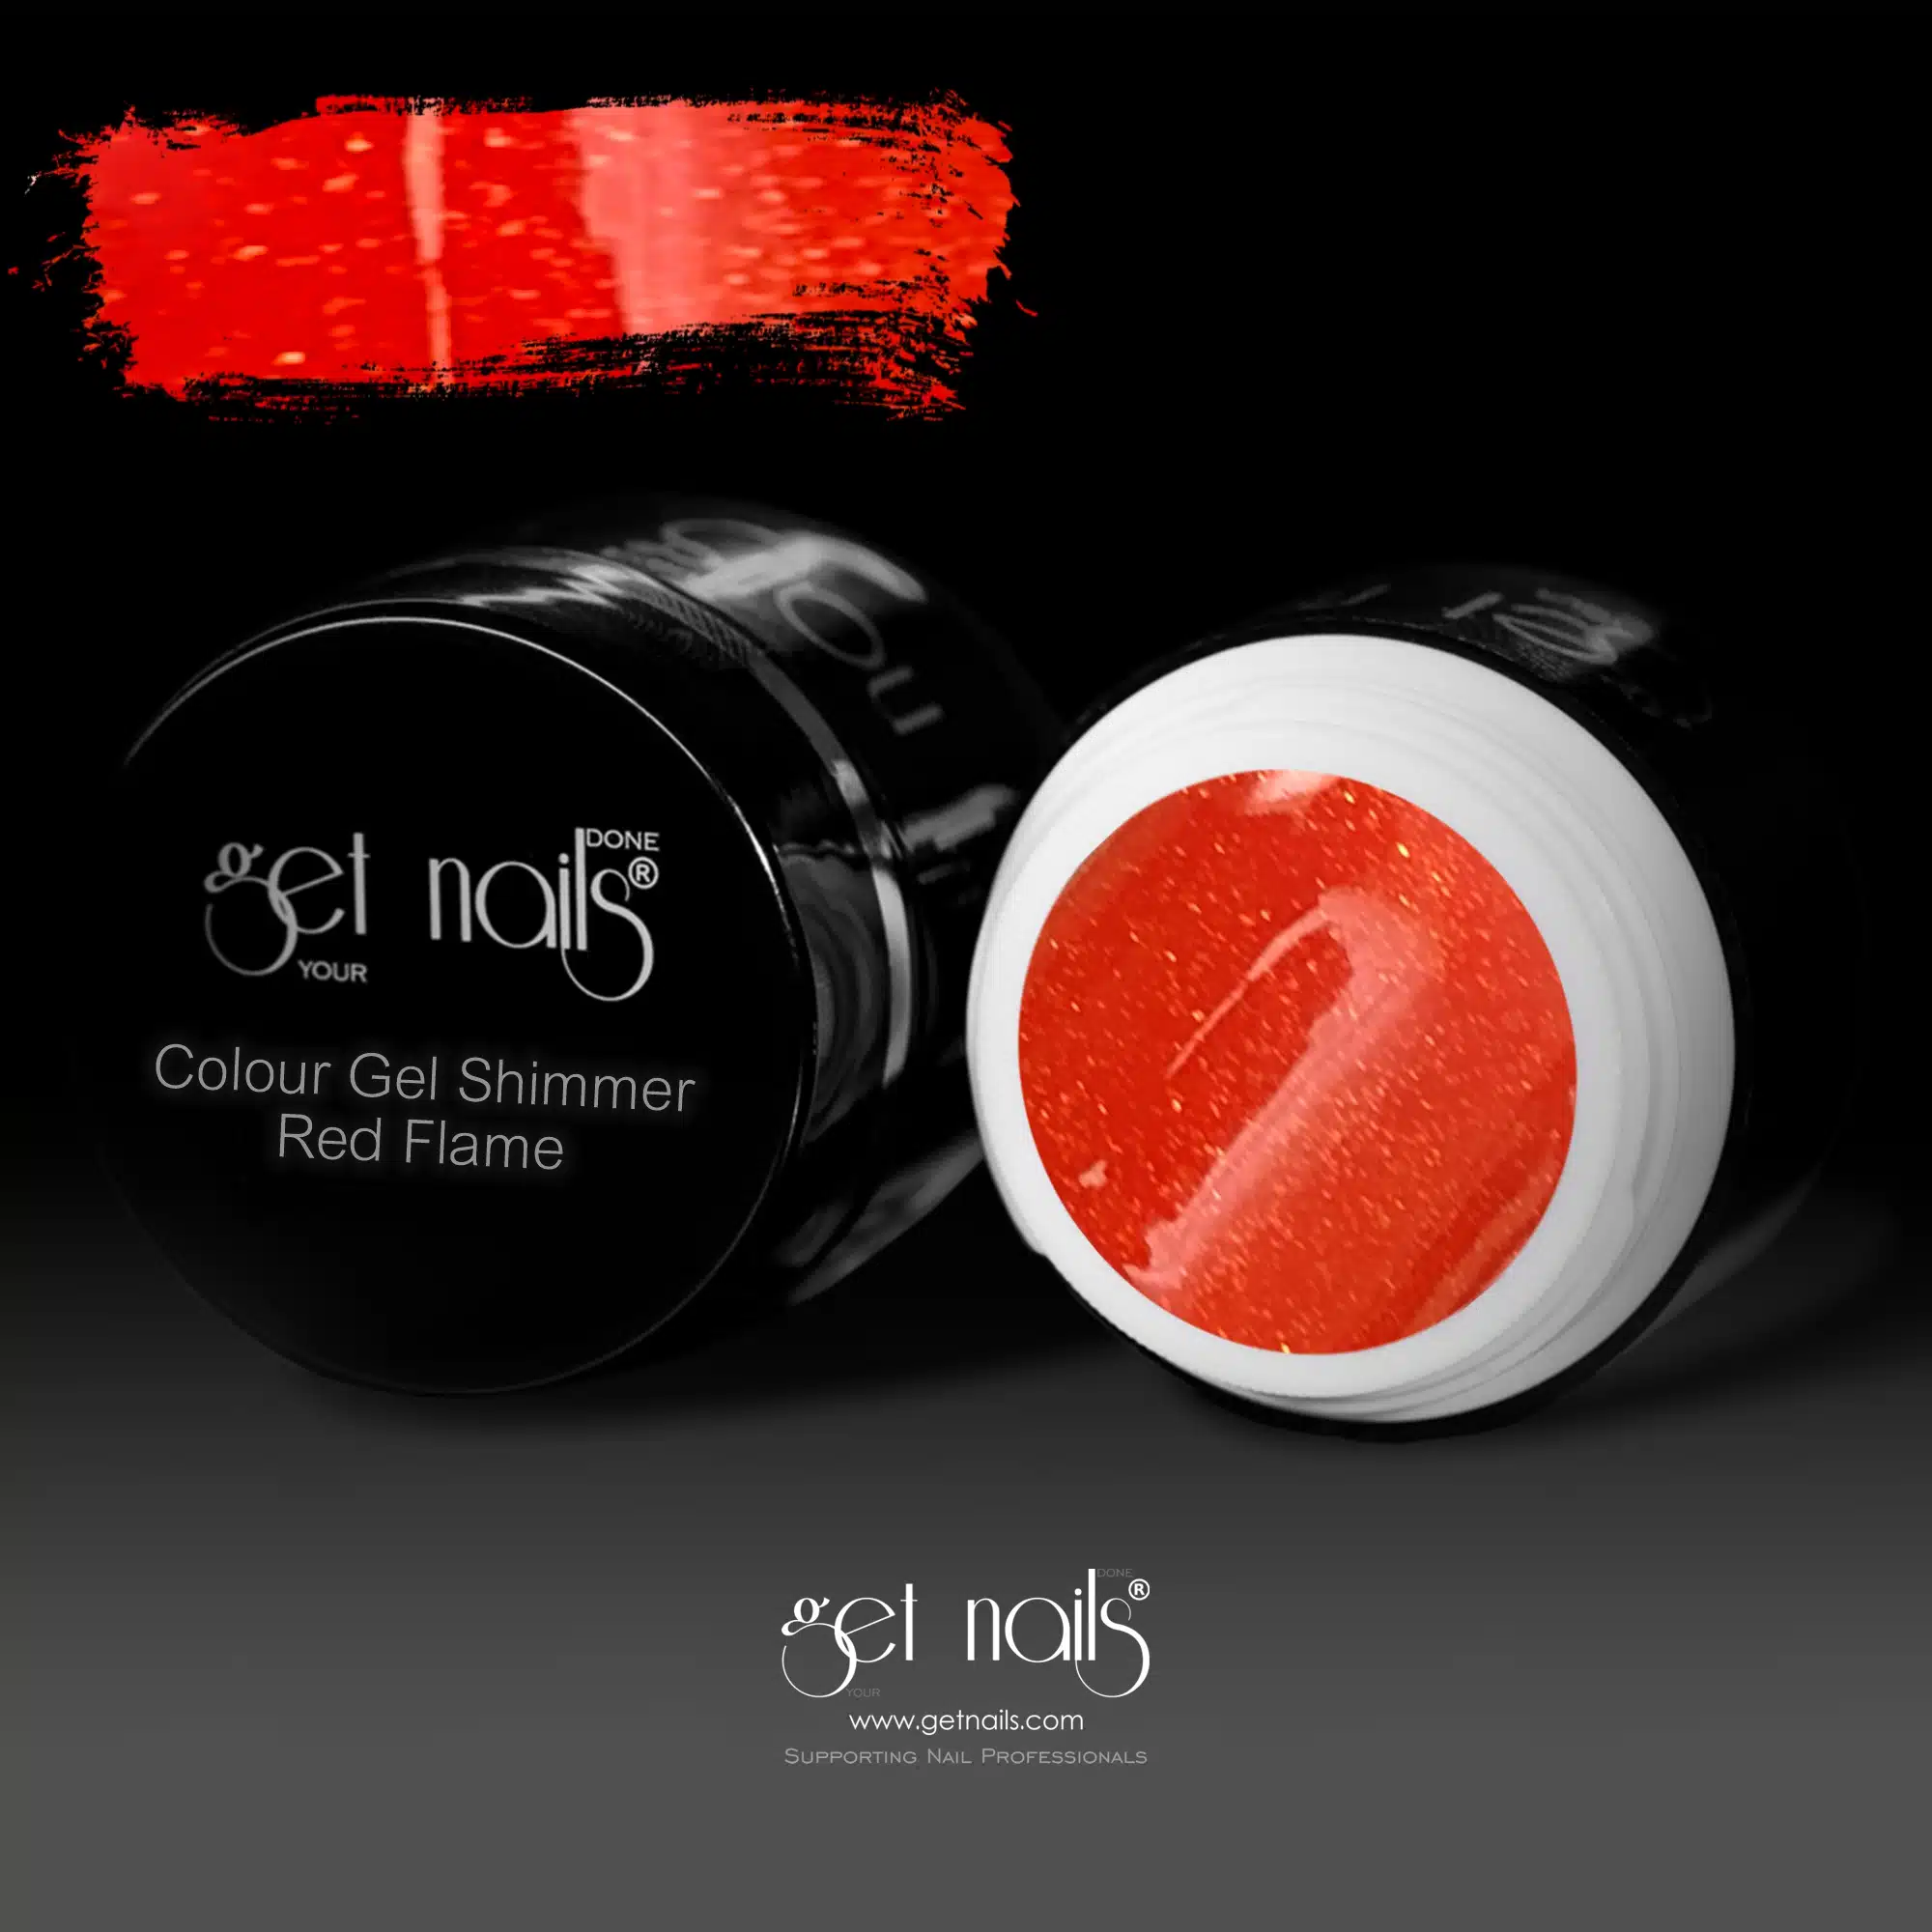 Get Nails Austria - Gel Color Shimmer Red Flame 5g